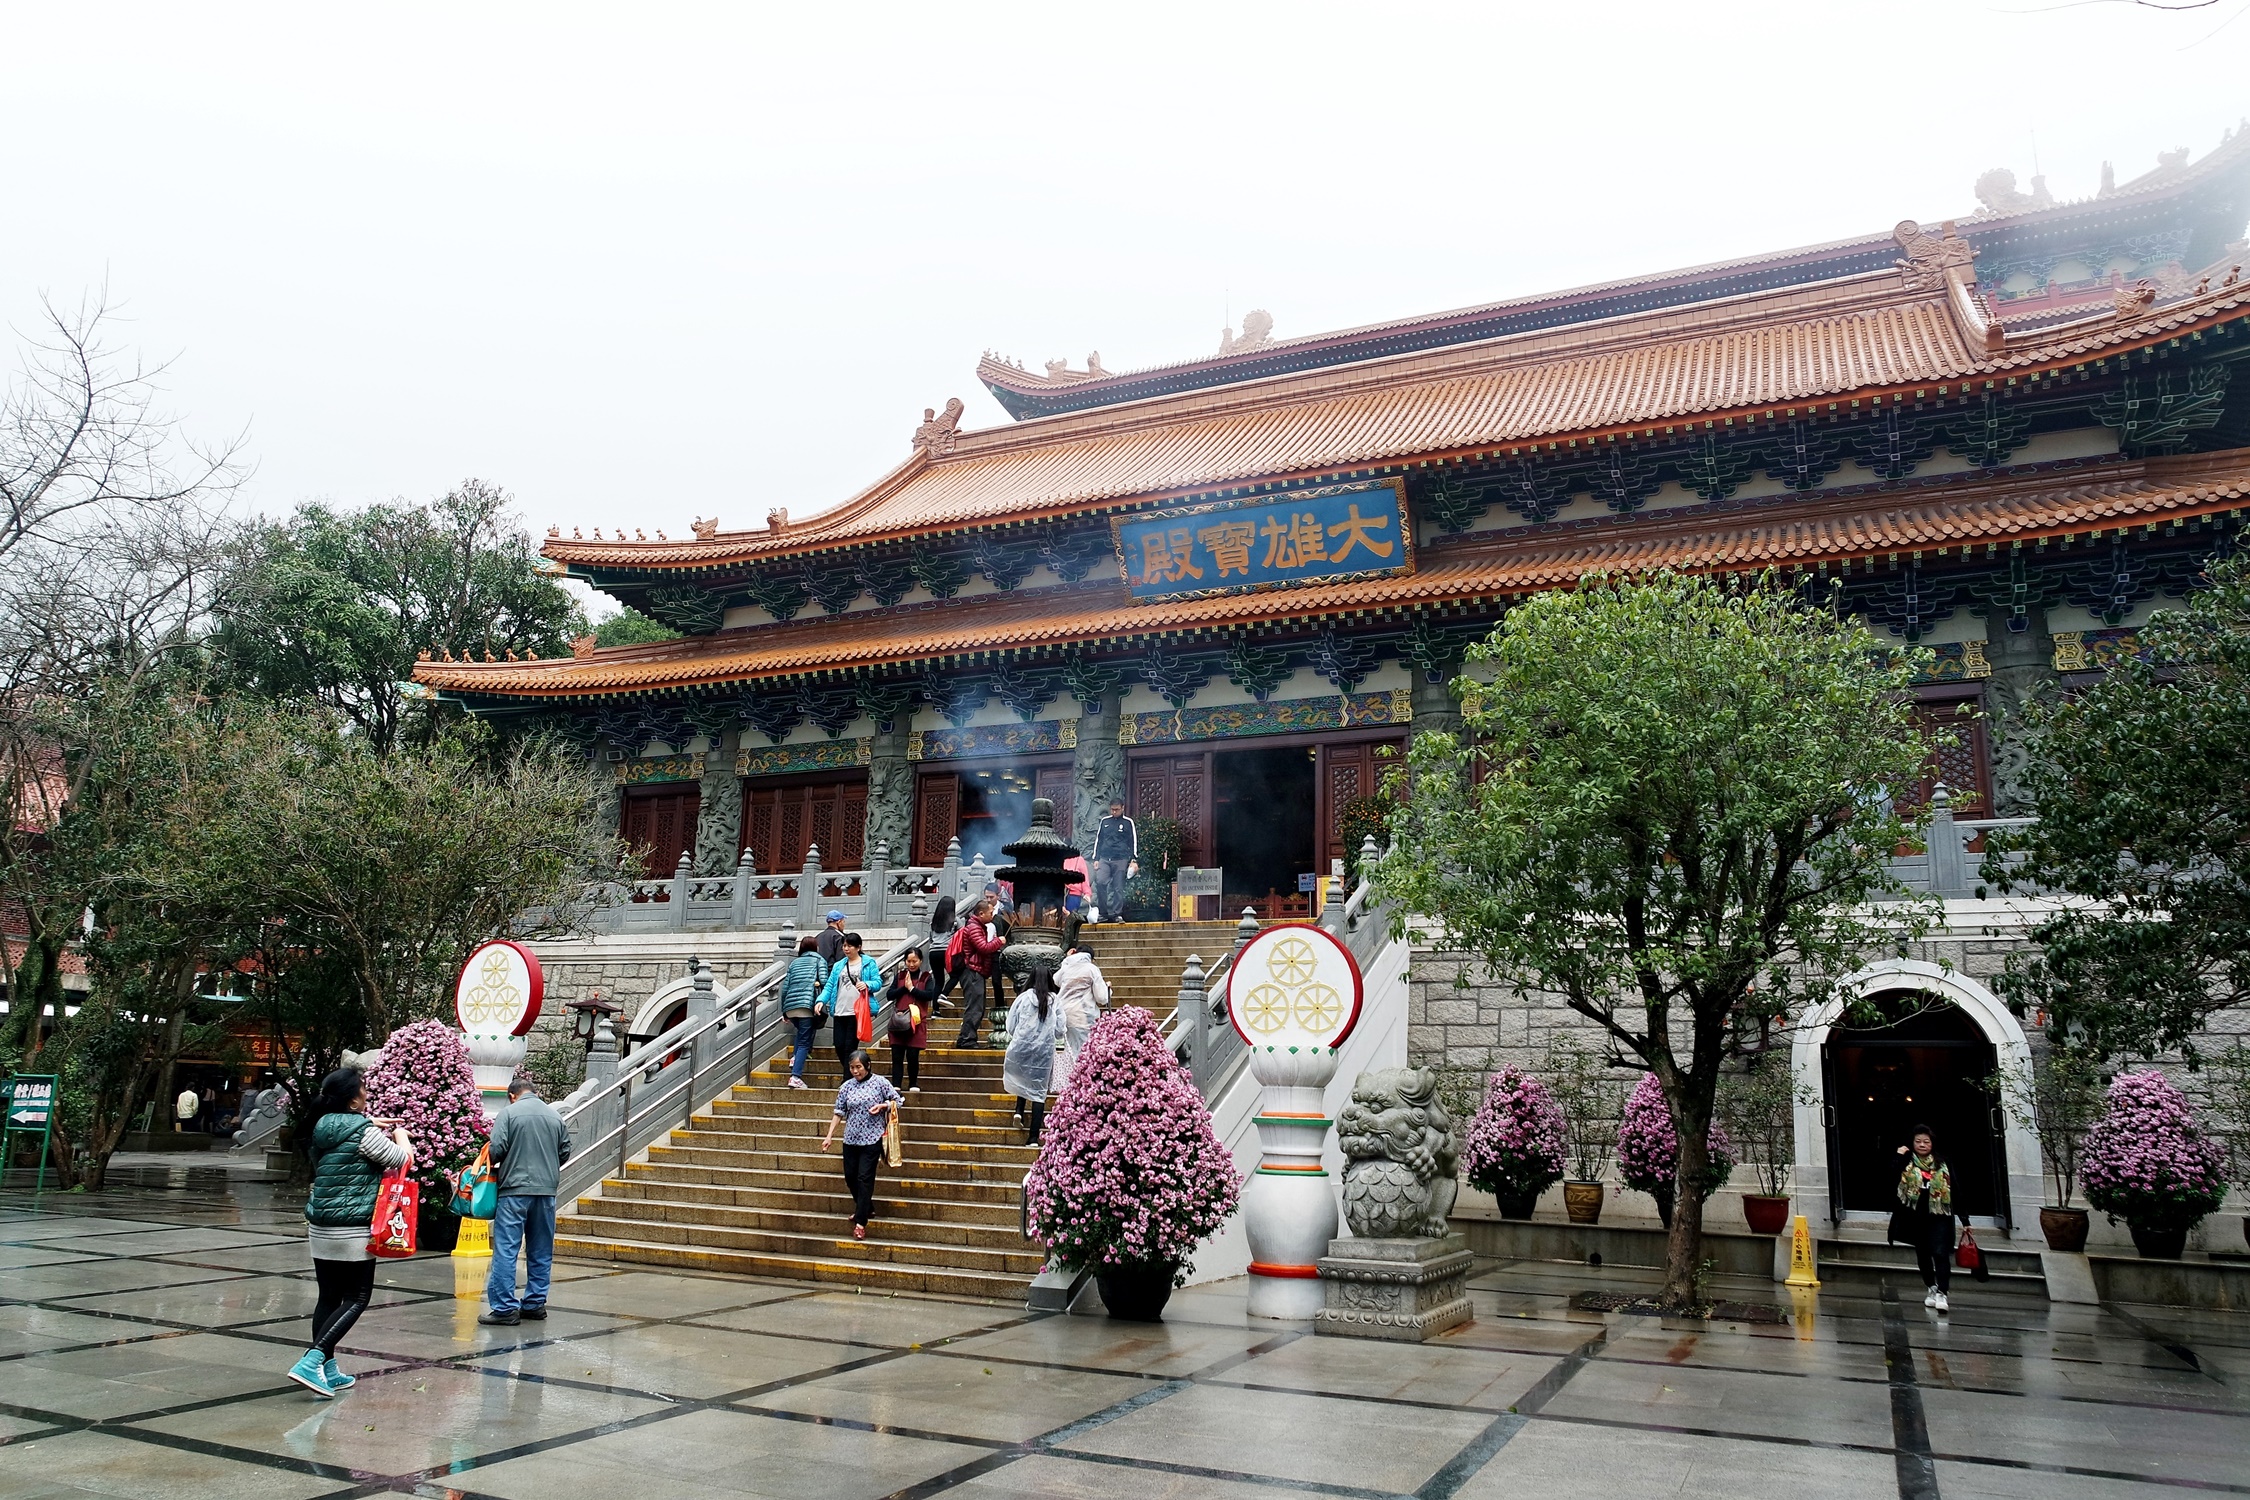 The Big Buddha and Po Lin Monastery